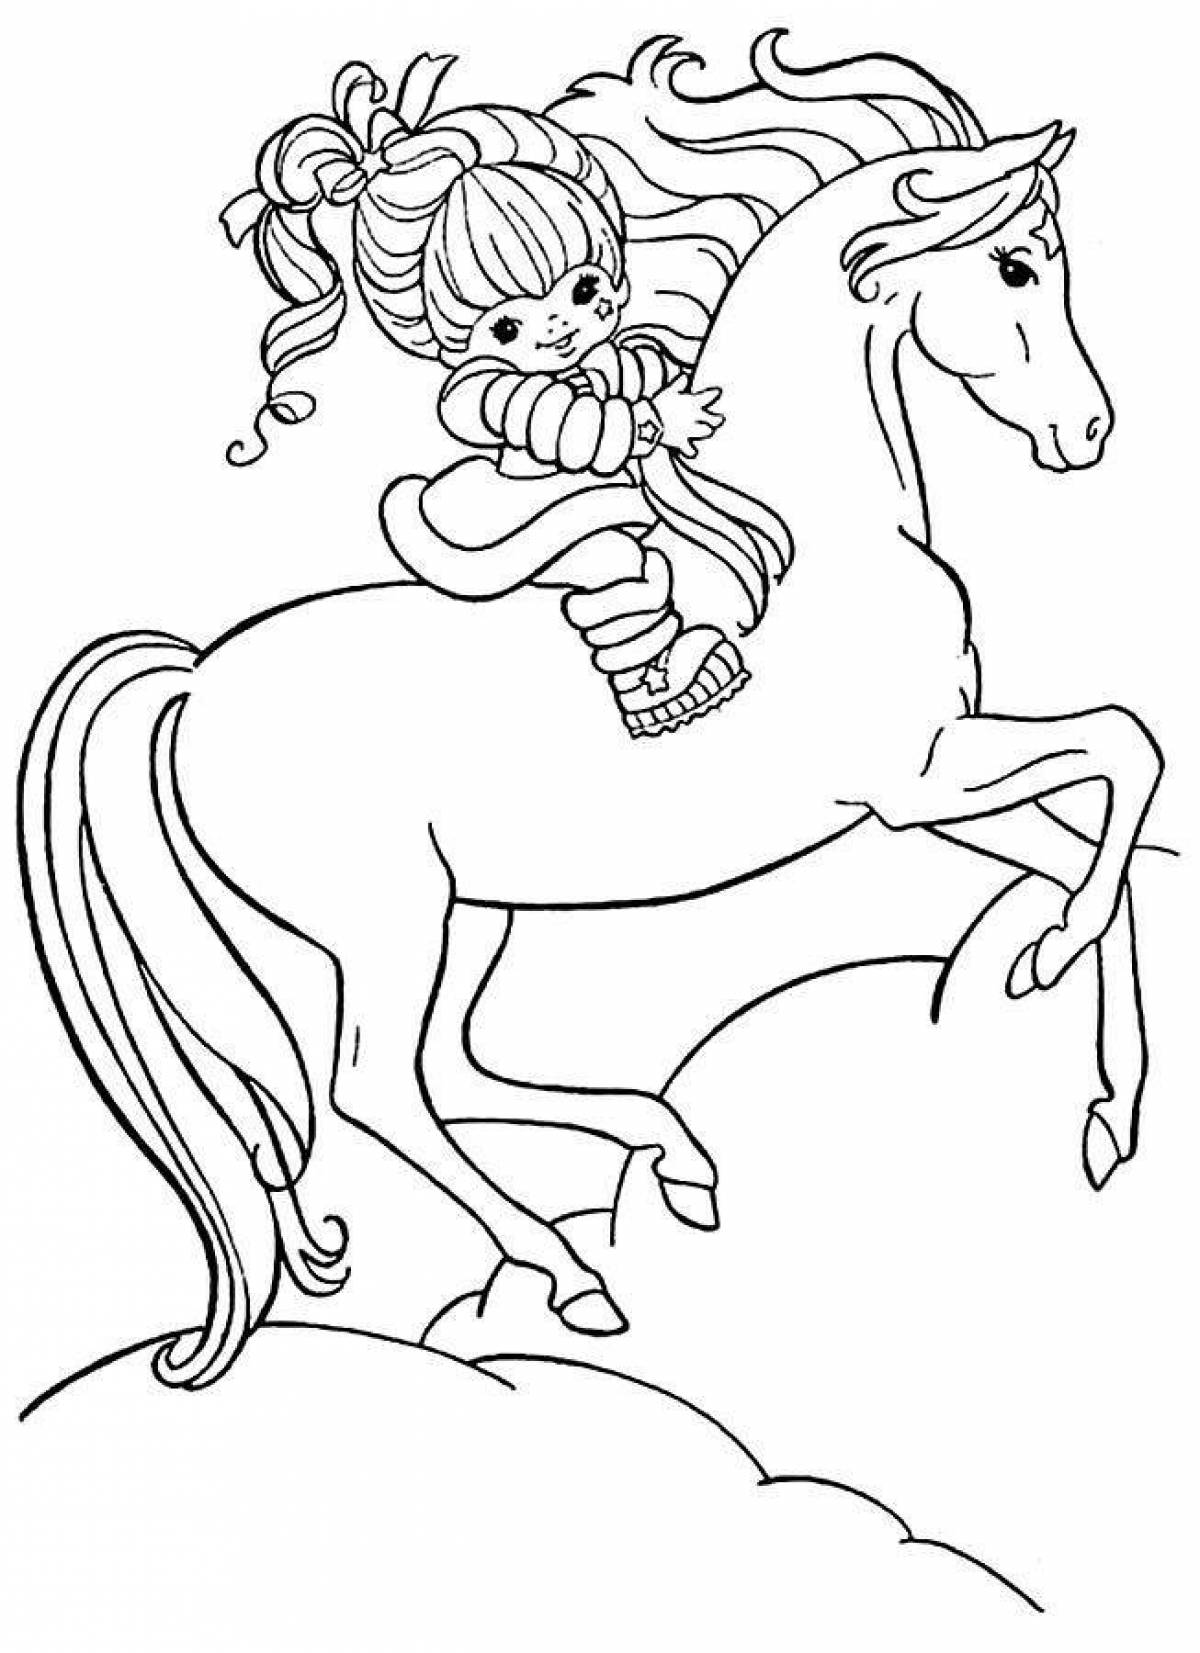 Великолепная раскраска лошади для девочек